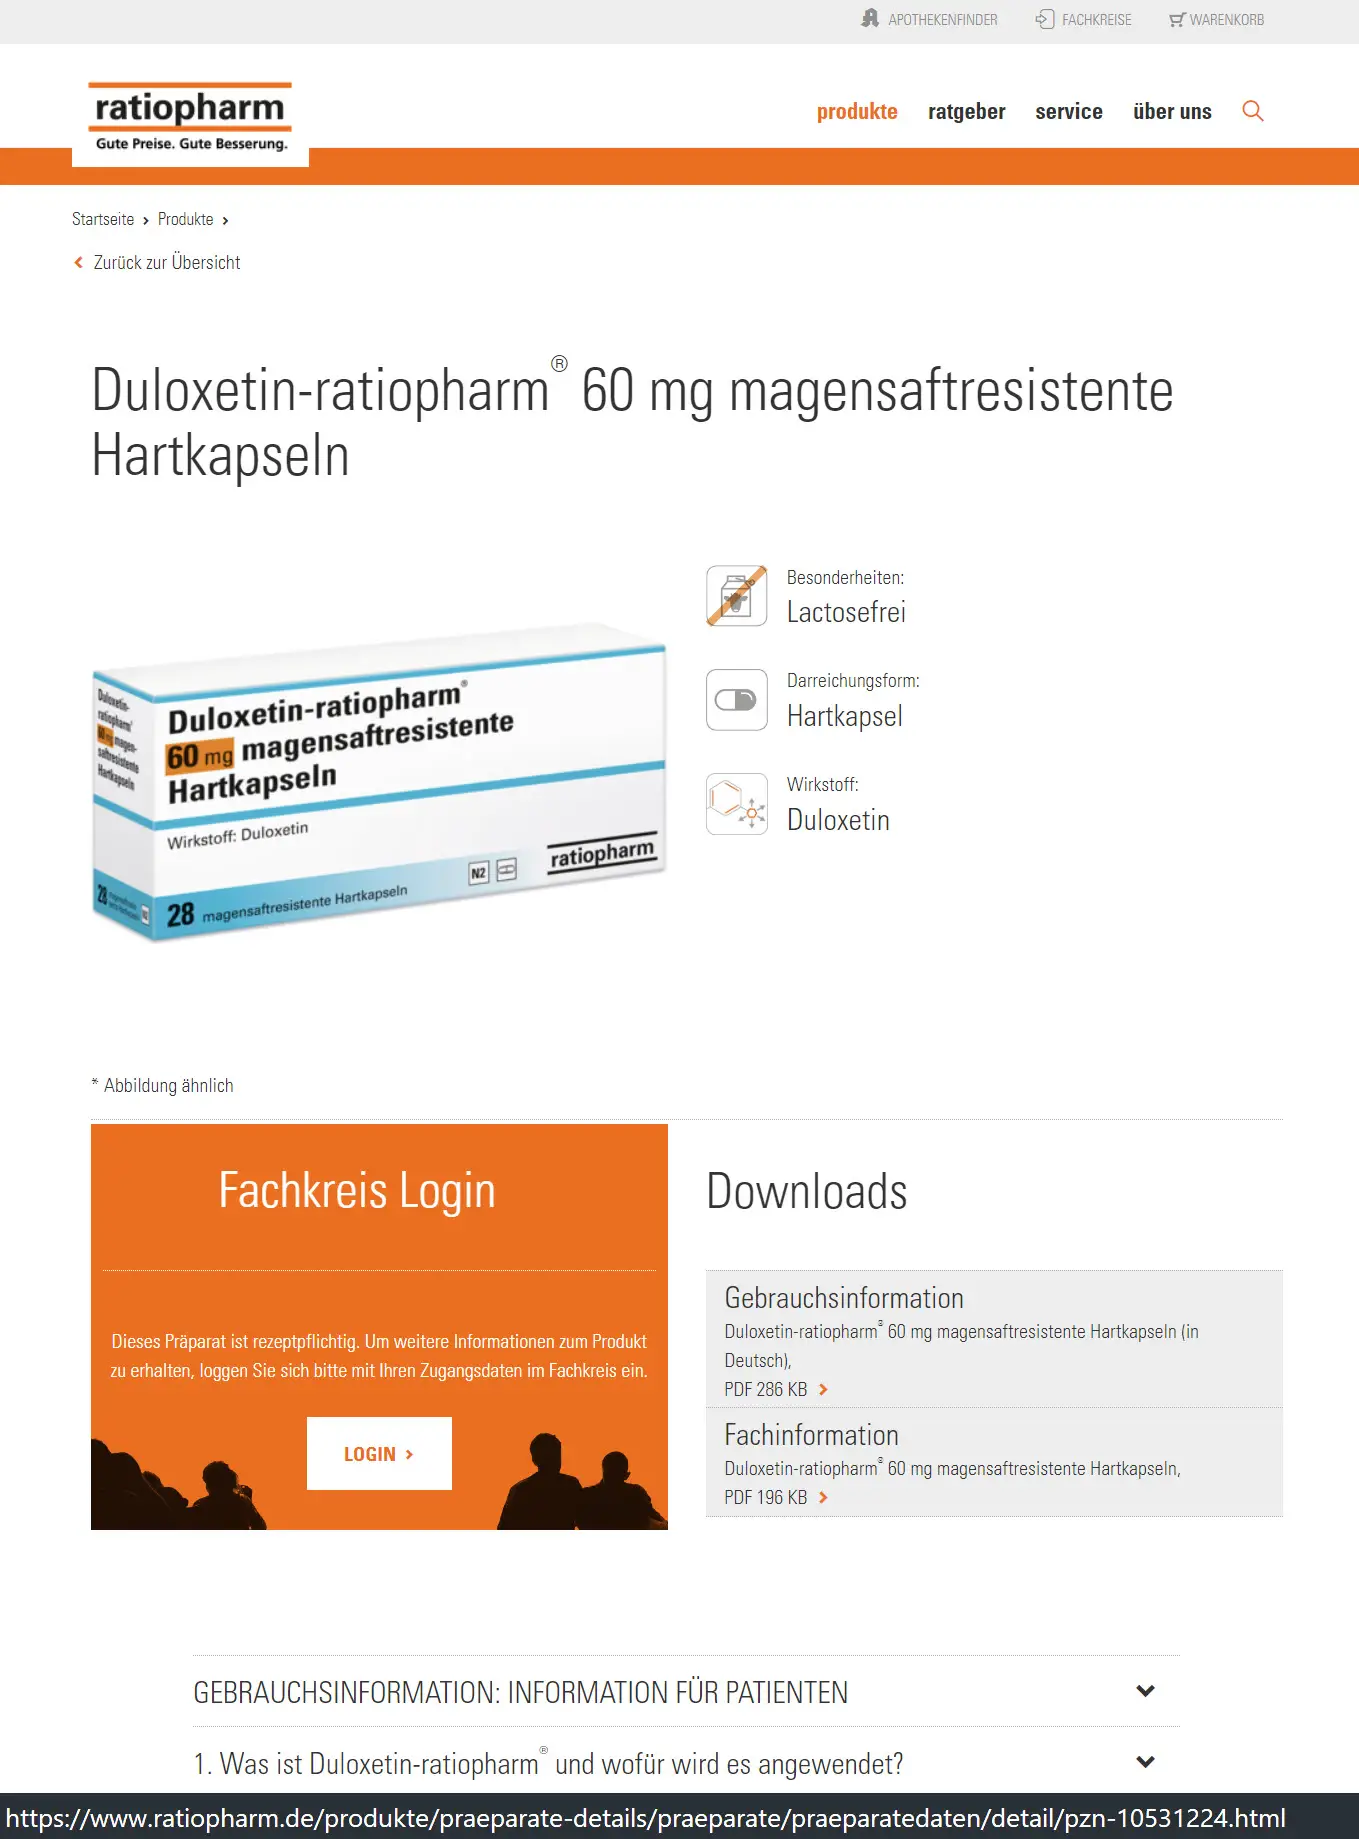 Viele Hersteller bieten die Dosierung 30 mg an; Ratiopharm im Beispiel hier gleich als 60 mg Hartkapseln